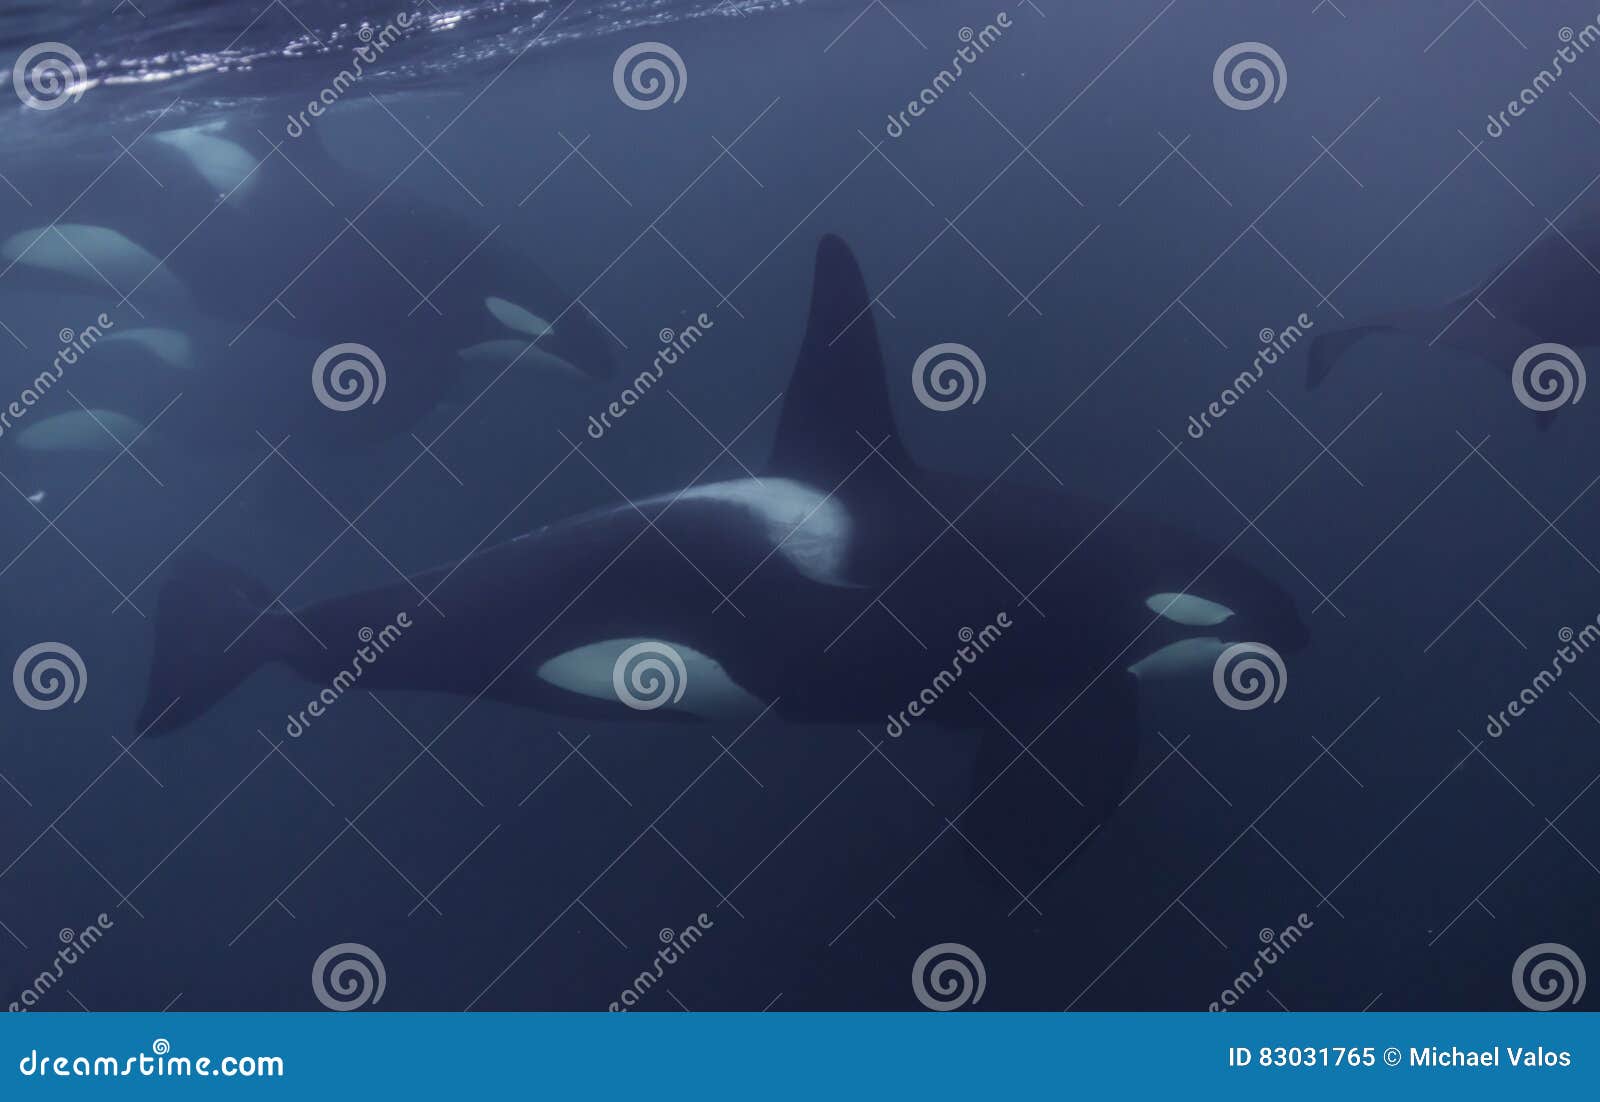 orca pod close up